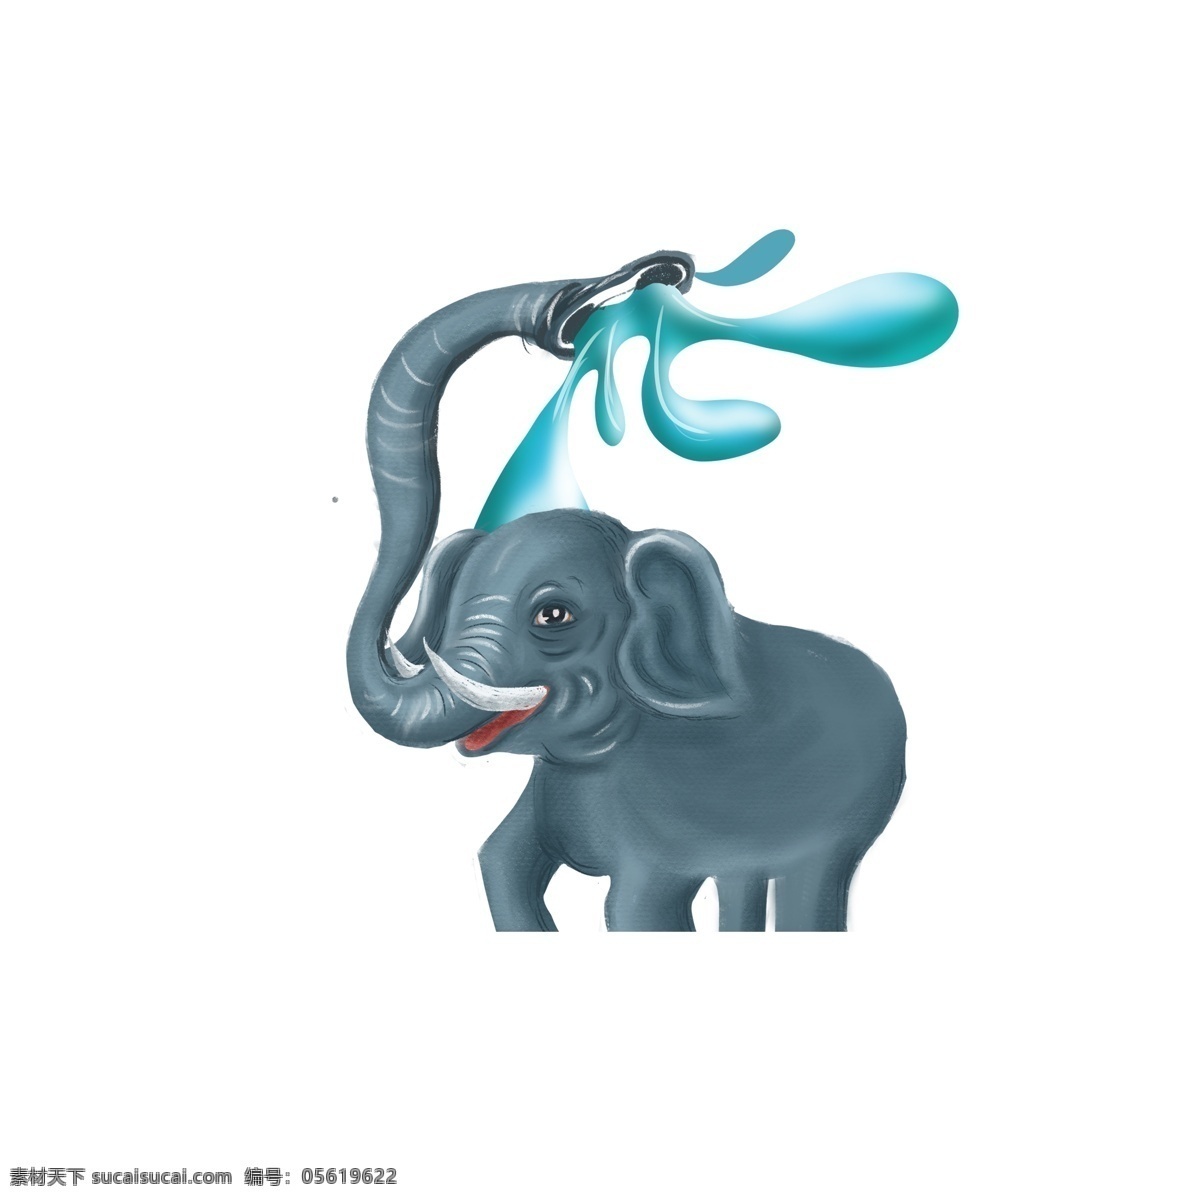 原创 卡通 大象 喷水 元素 彩绘 收回 创意 元素设计